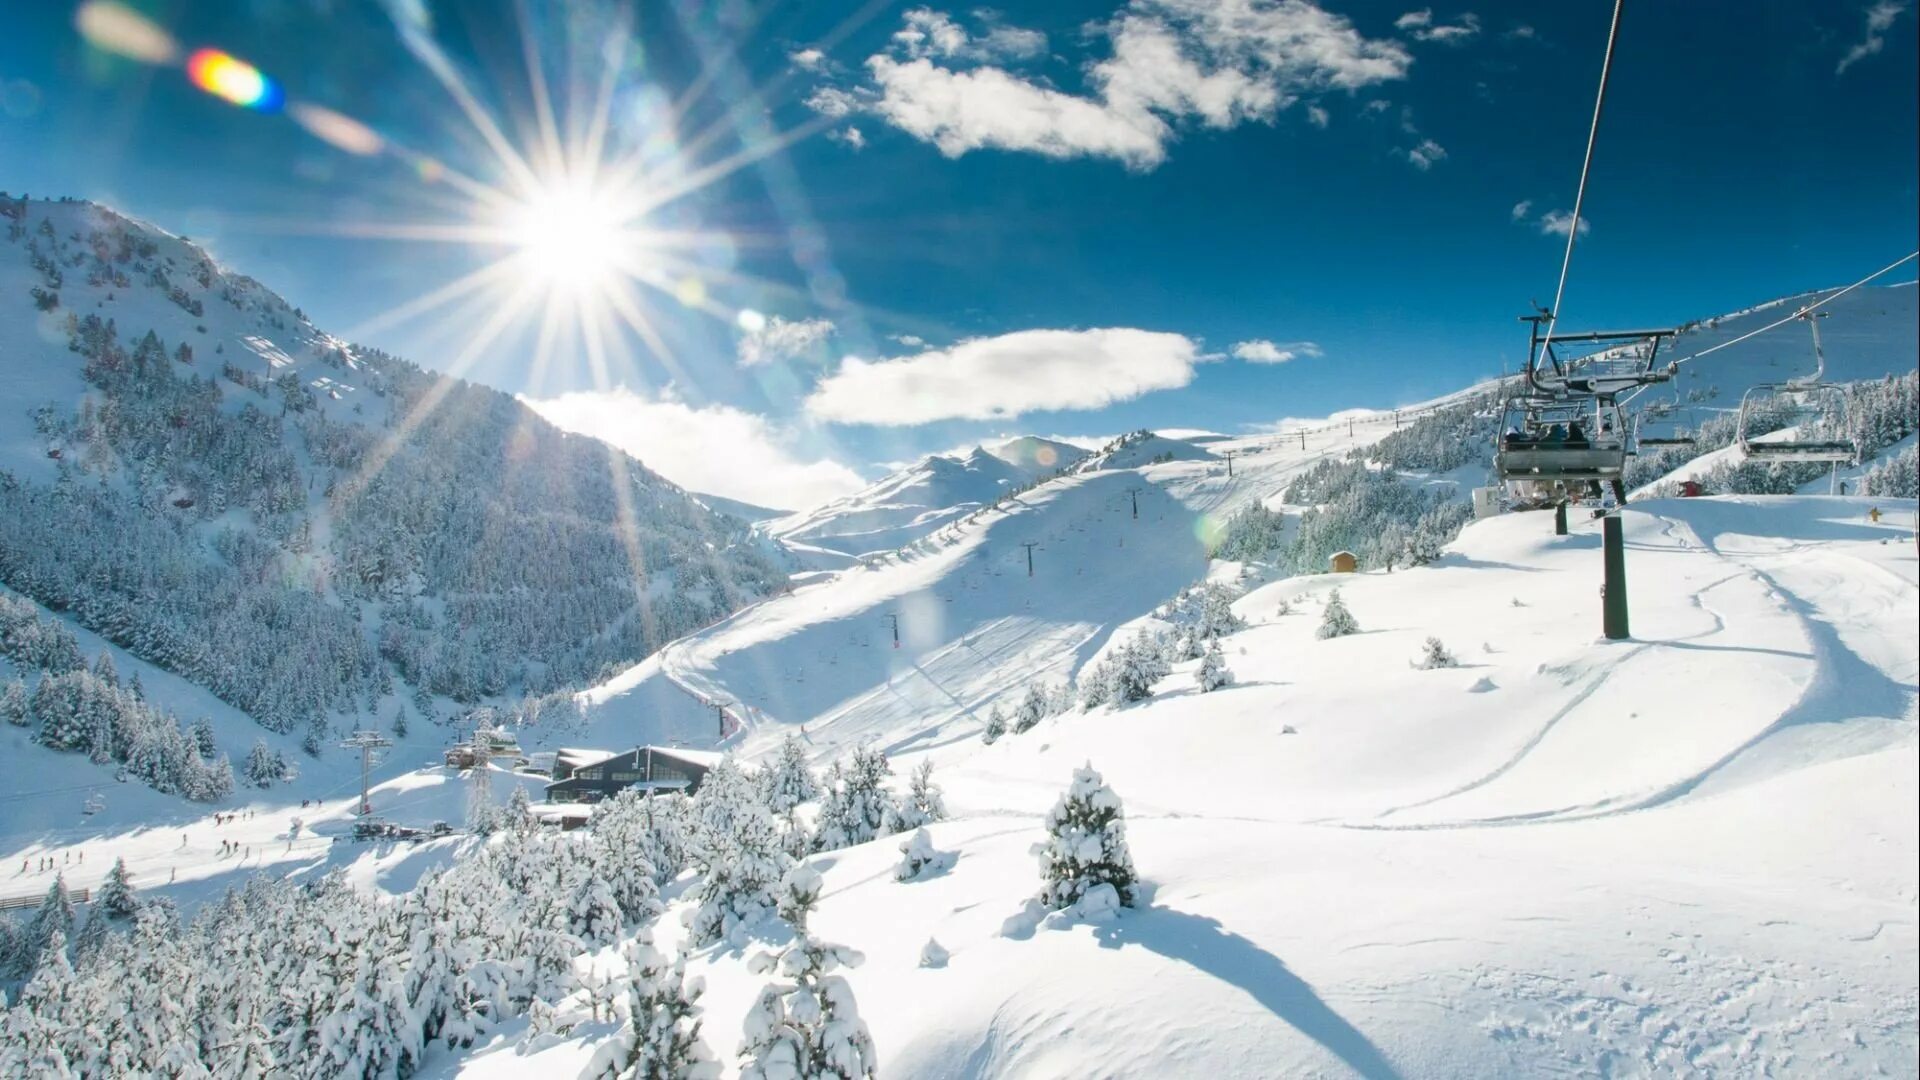 Андорра горнолыжный курорт 2020. Альпы горнолыжка. Колашин горнолыжный курорт. Грандвалира горнолыжный курорт. Виды горнолыжного курорта